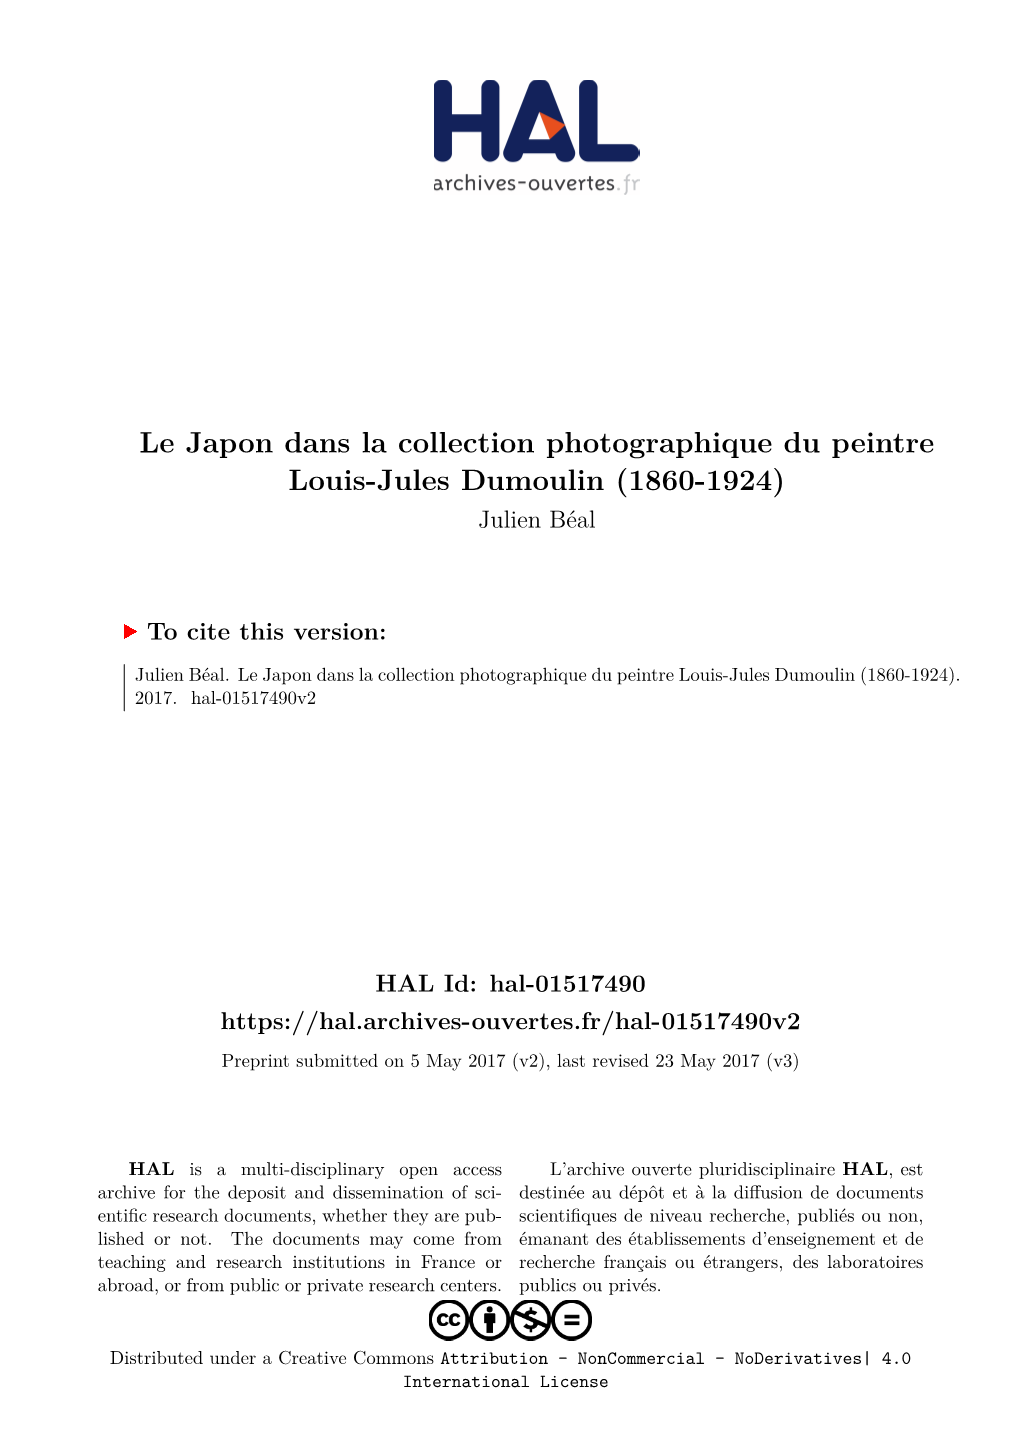 Le Japon Dans La Collection Photographique Du Peintre Louis-Jules Dumoulin (1860-1924) Julien Béal